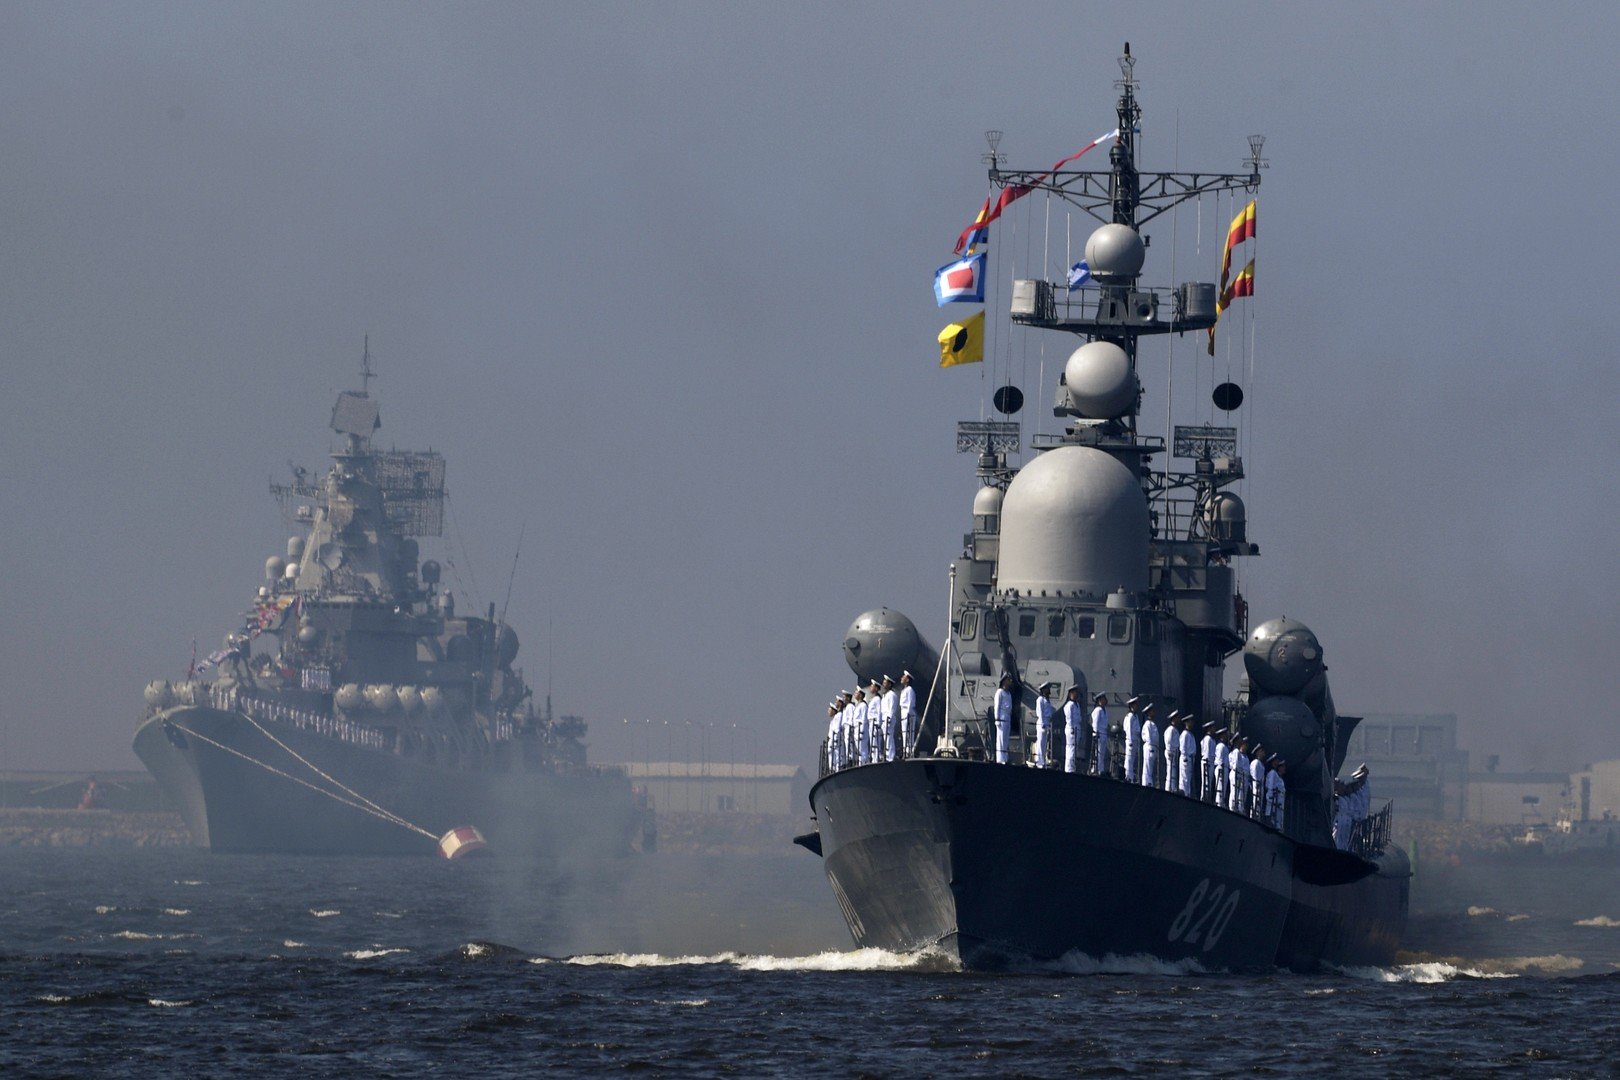 مناورات بحرية روسية في بحر بارنتس